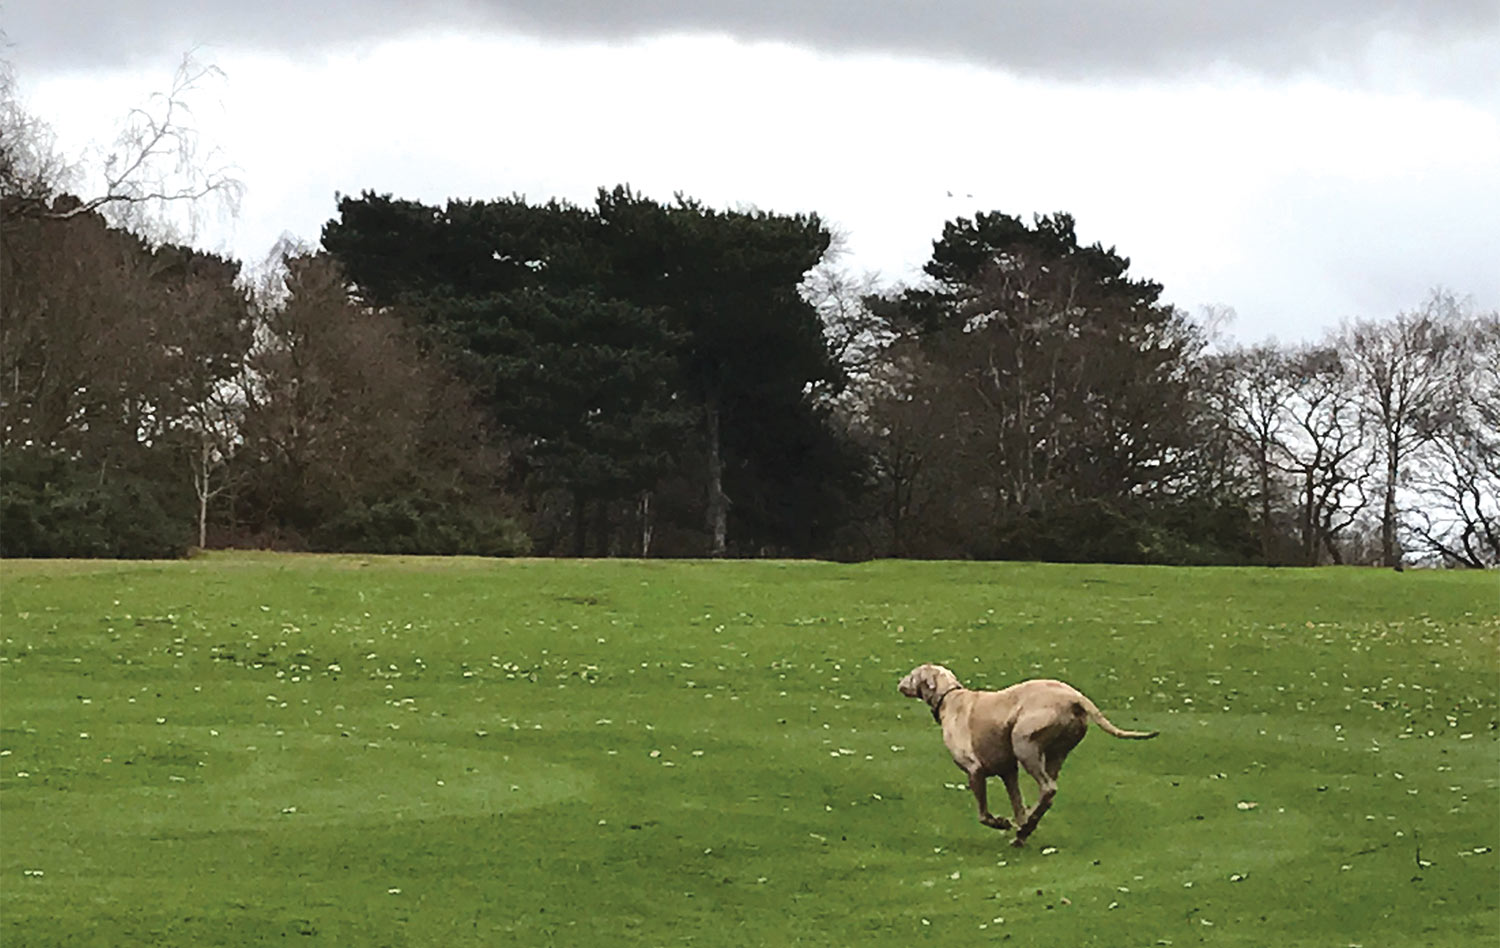 Dog running through an empty, verdant field.